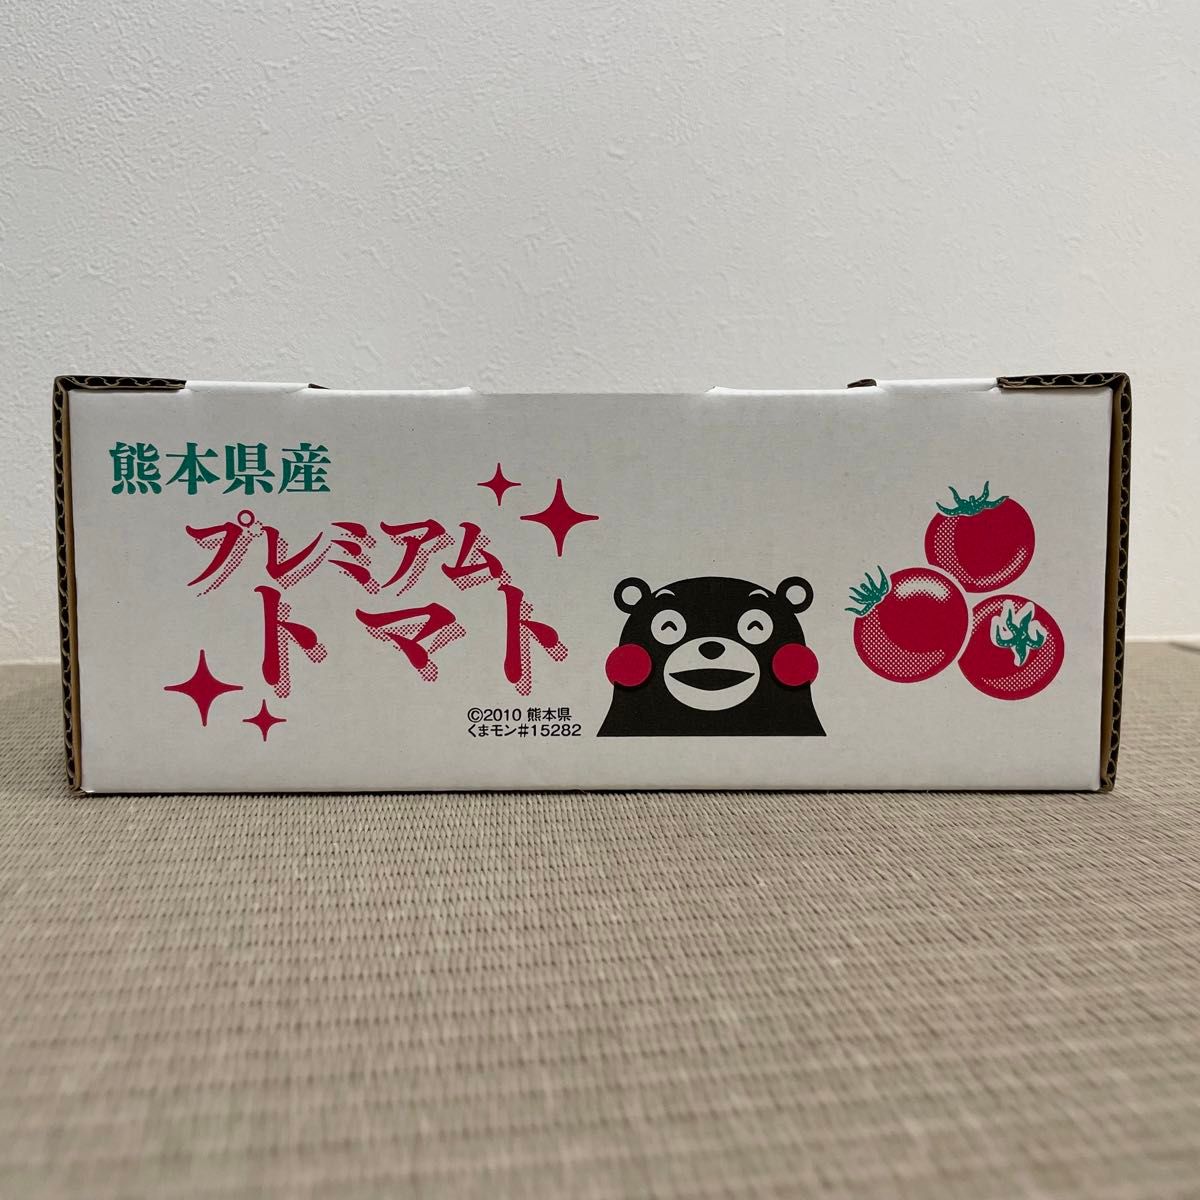 熊本県産ミニトマト アイコ くまモン箱 1kg